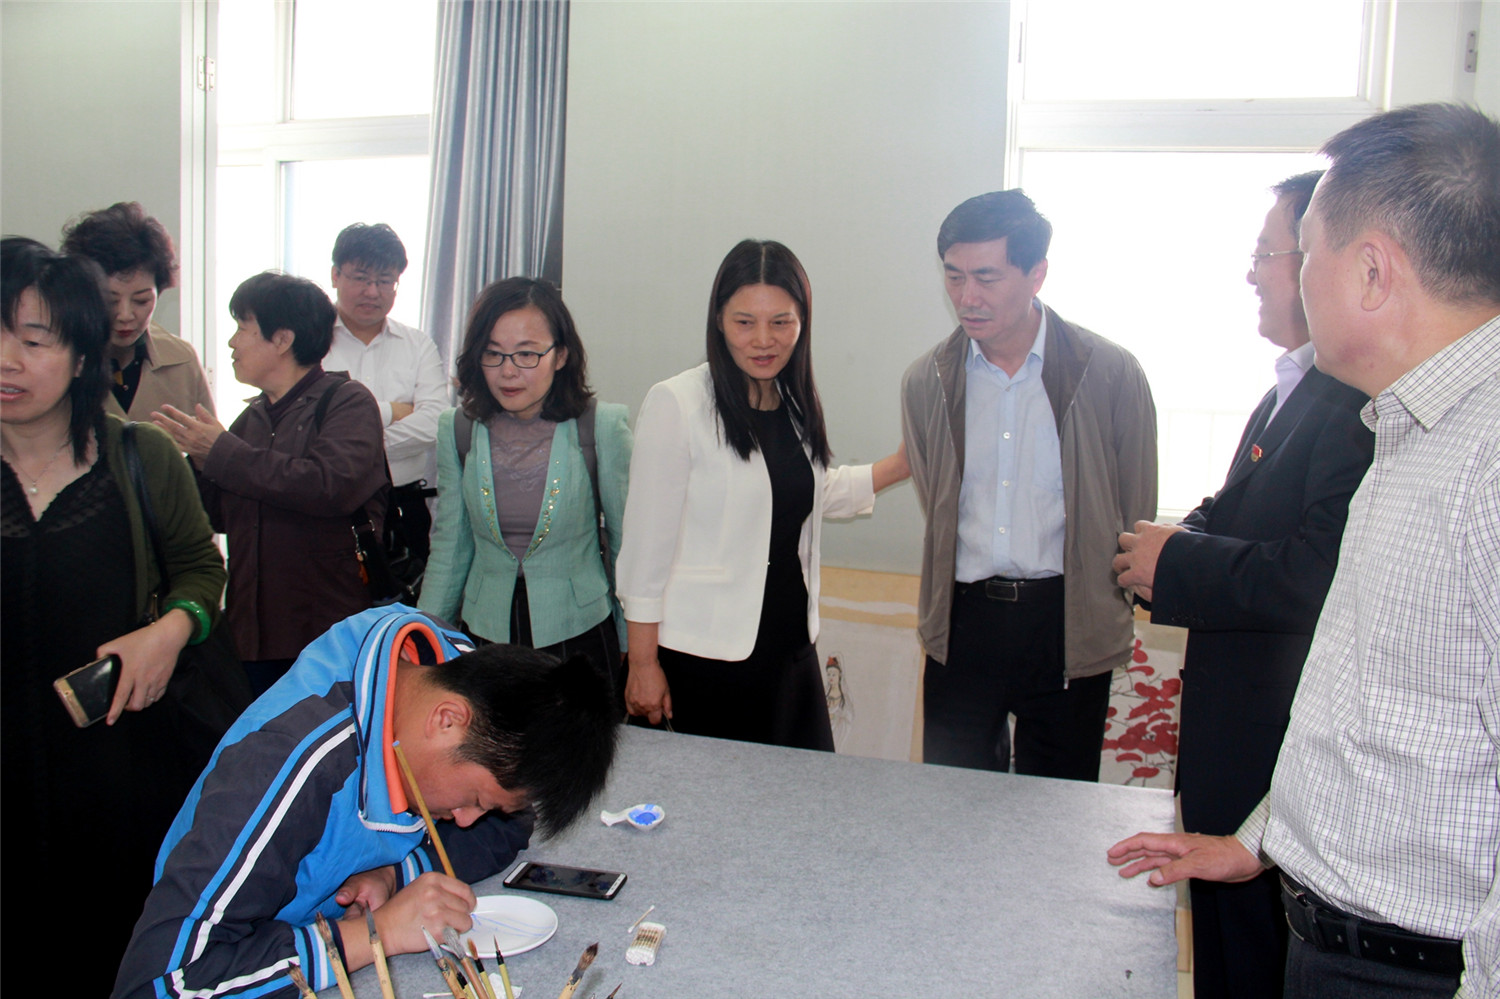 中国教育学会特殊教育分会常务理事会议在淄博市特殊教育中心召开